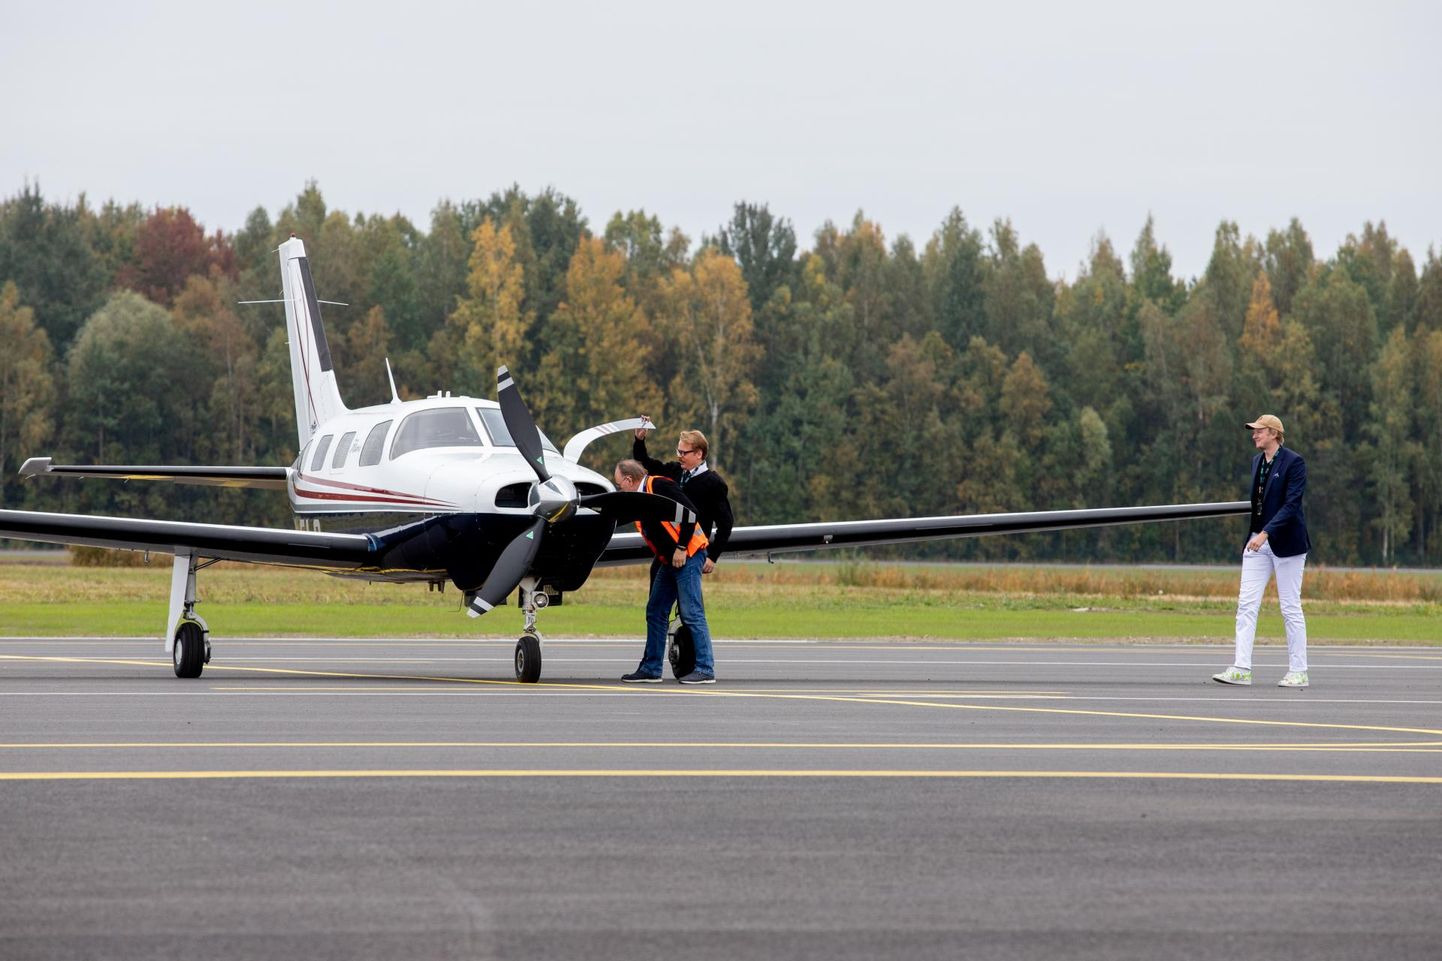 Uuenenud lennuliiklusala avamine Pärnu lennujaamas on kahtlemata oluline sündmus.